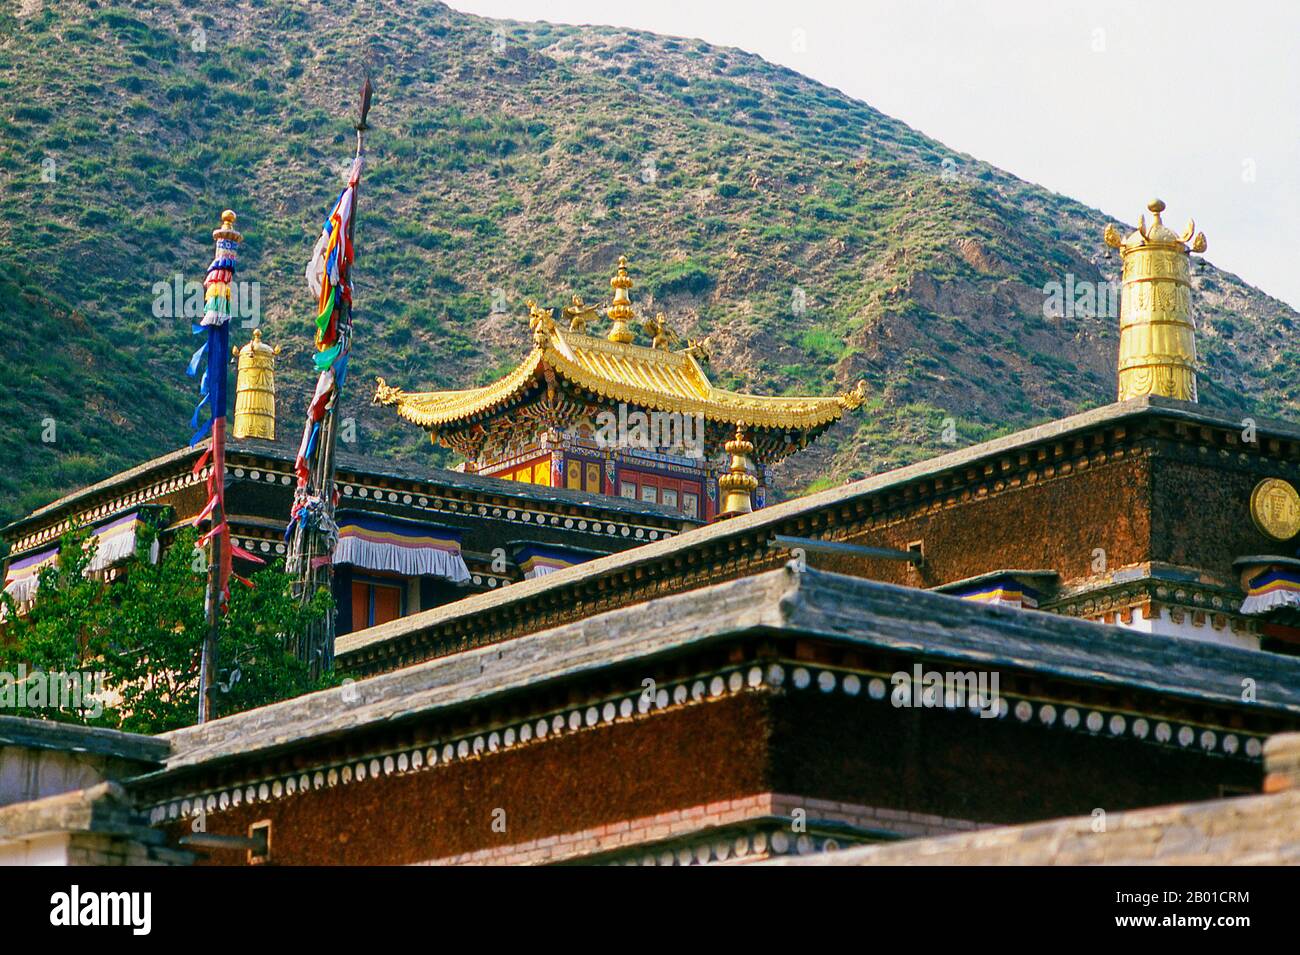 China: Labrang Kloster, Xiahe, Provinz Gansu. Labrang Kloster ist eines der sechs großen Klöster der Gelug (Gelber Hut) Schule des tibetischen Buddhismus. Sein formaler Name ist Gandan Shaydrup Dargay Tashi Gyaysu Khyilway Ling, allgemein bekannt als Labrang Tashi khyil oder einfach Labrang. Das Kloster wurde 1709 von der ersten Jamyang Zhaypa, Ngawang Tsondru, gegründet. Es ist die wichtigste Klosterstadt des tibetischen Buddhismus außerhalb der tibetischen Autonomen Region. Stockfoto